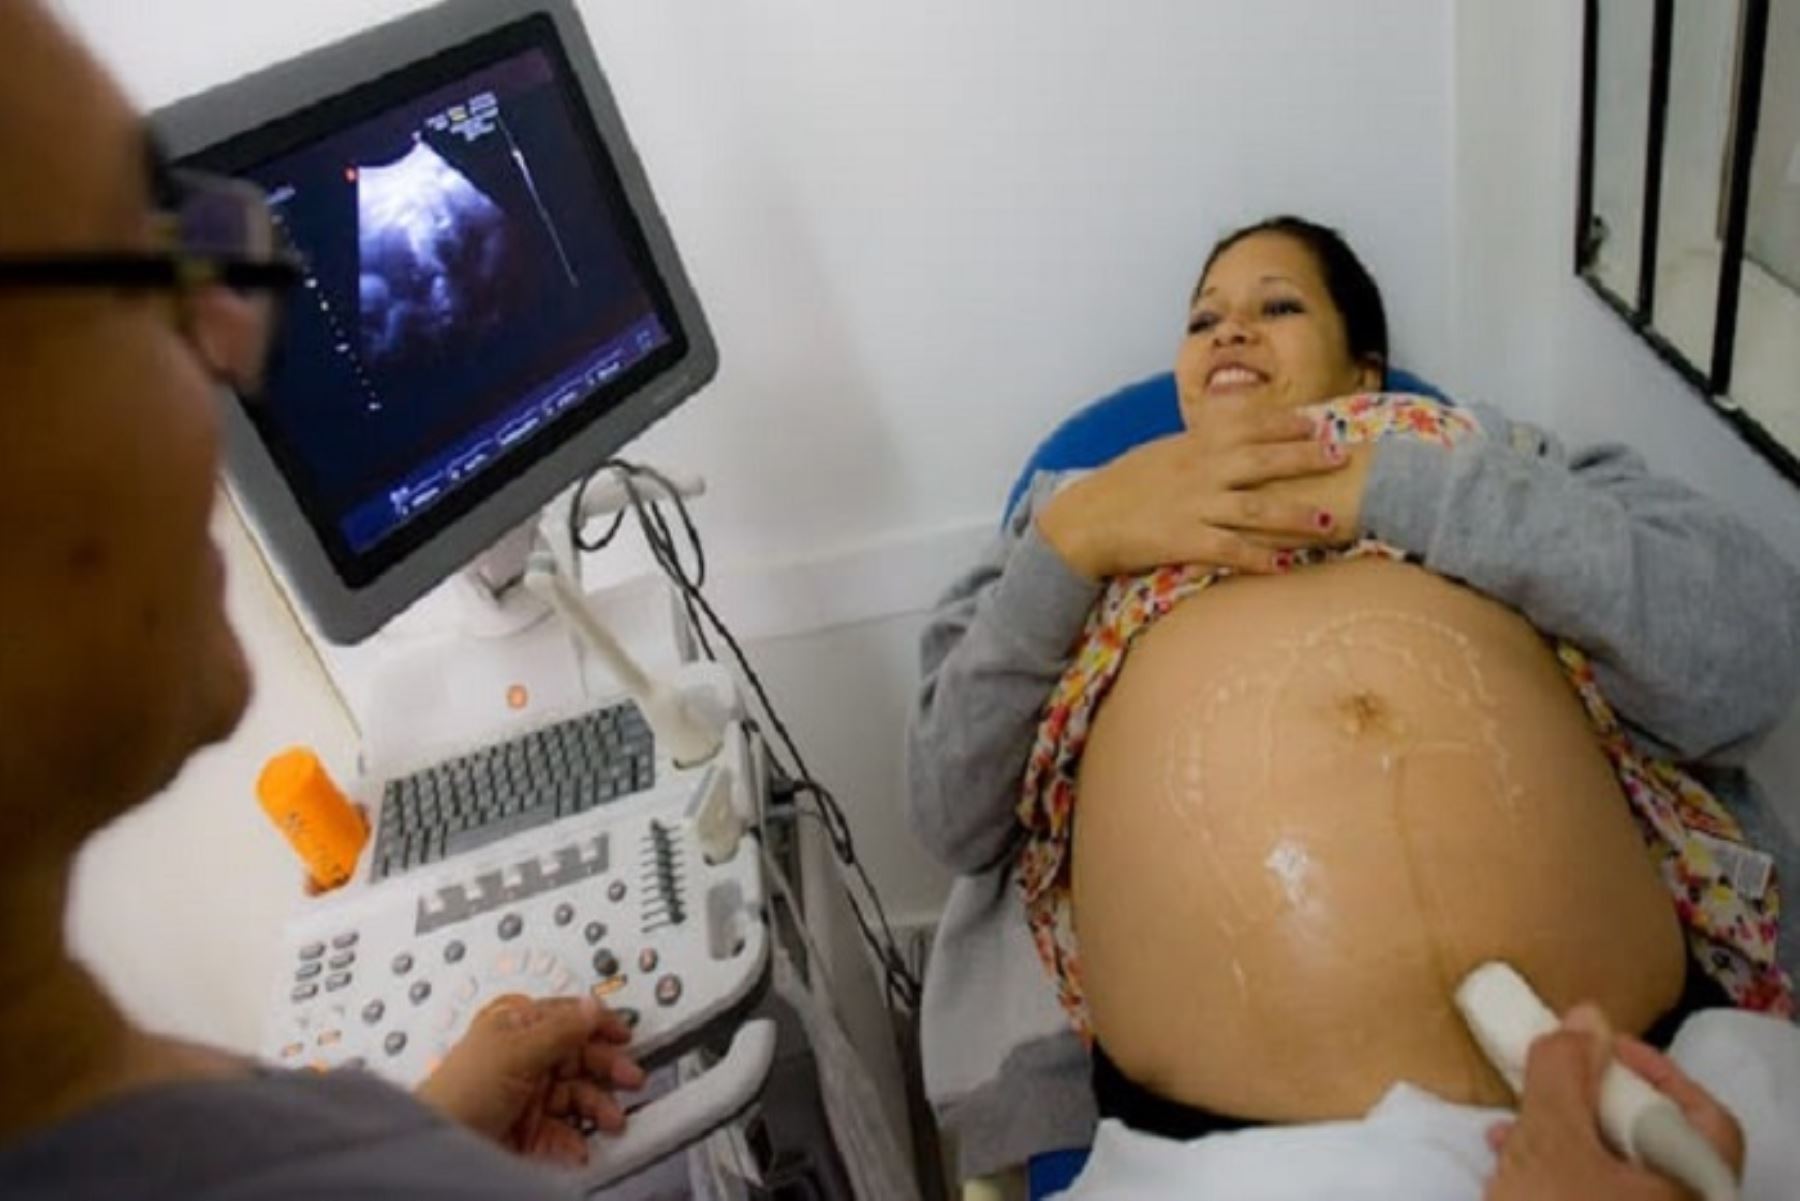 Las regiones de La Libertad, Ucayali, Huánuco, Arequipa, Cajamarca, Pasco, Piura y Puno incrementaron el número de casos de muerte materna.